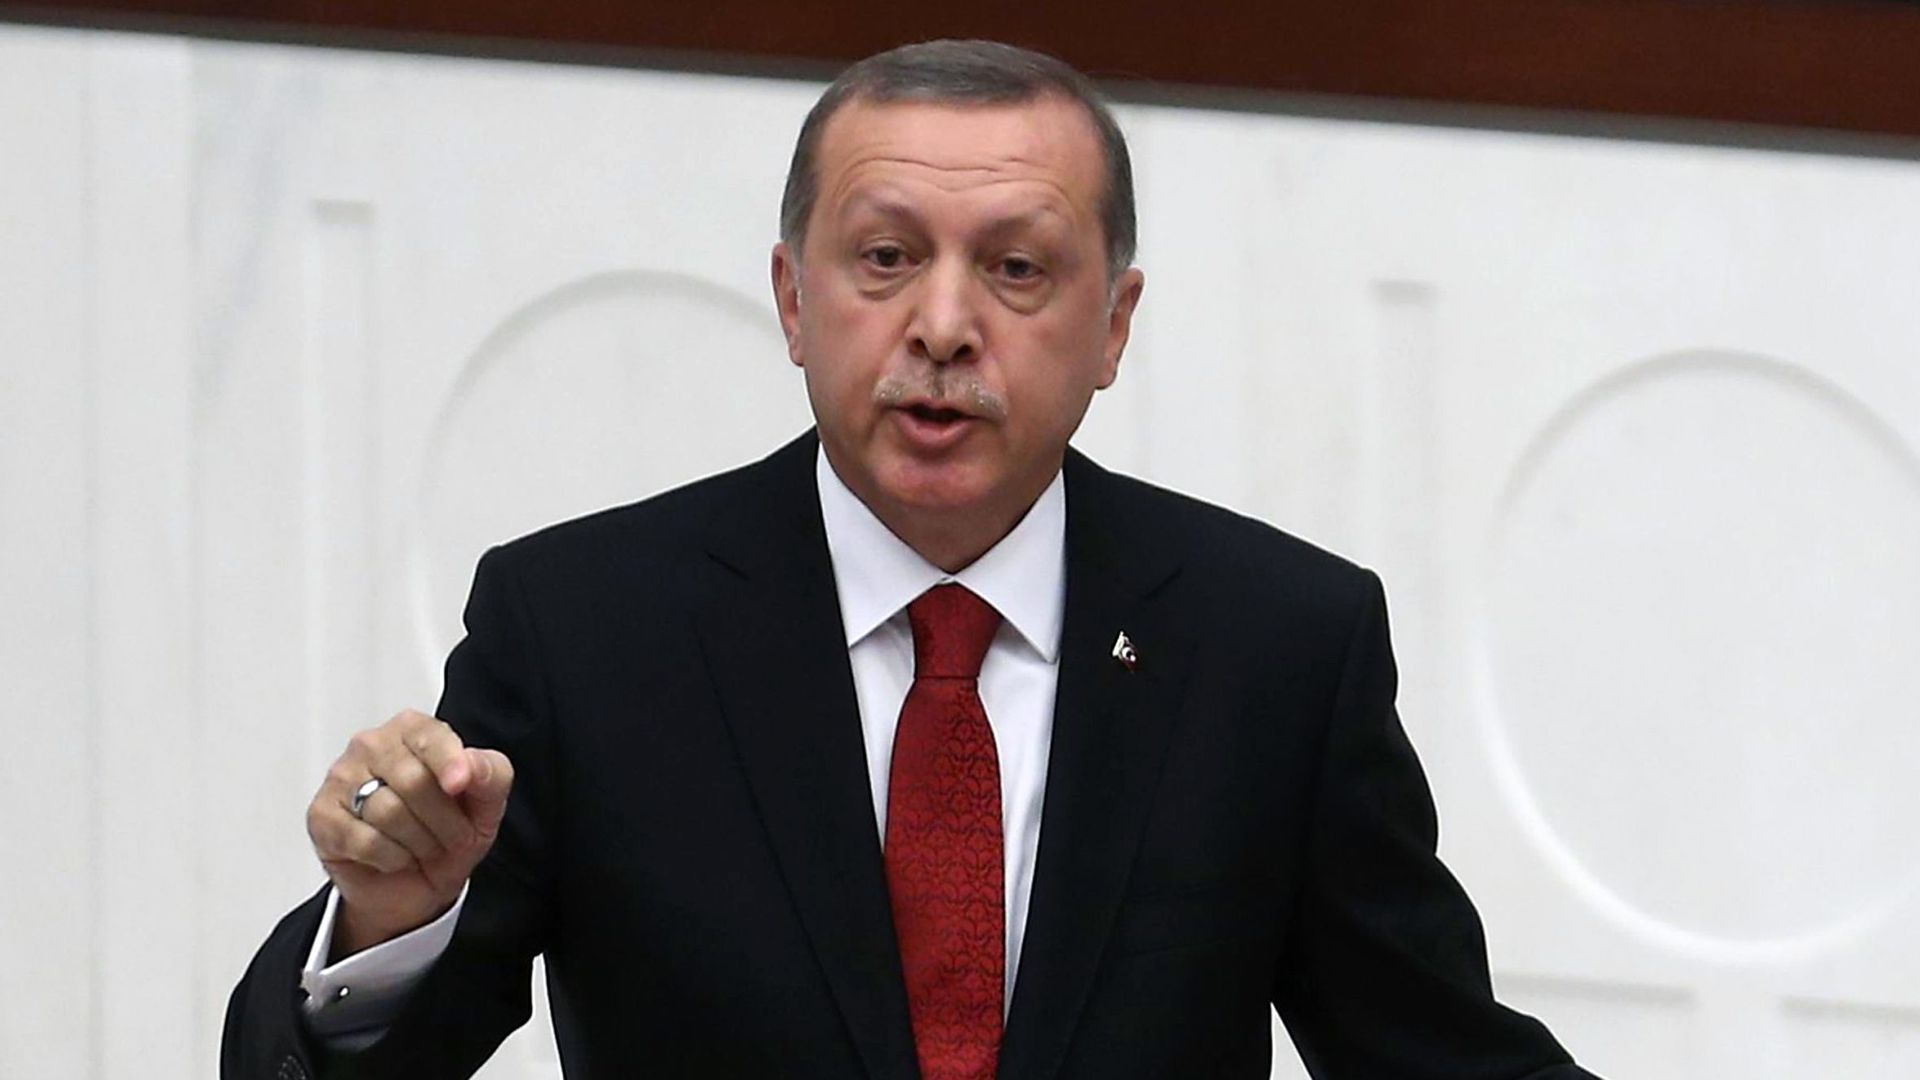 Le président Erdogan a répété sa volonté d'amener son pays à une adhésion à l'UE, à la peine depuis 2005, y voyant une "stratégie gagnant-gagnant".